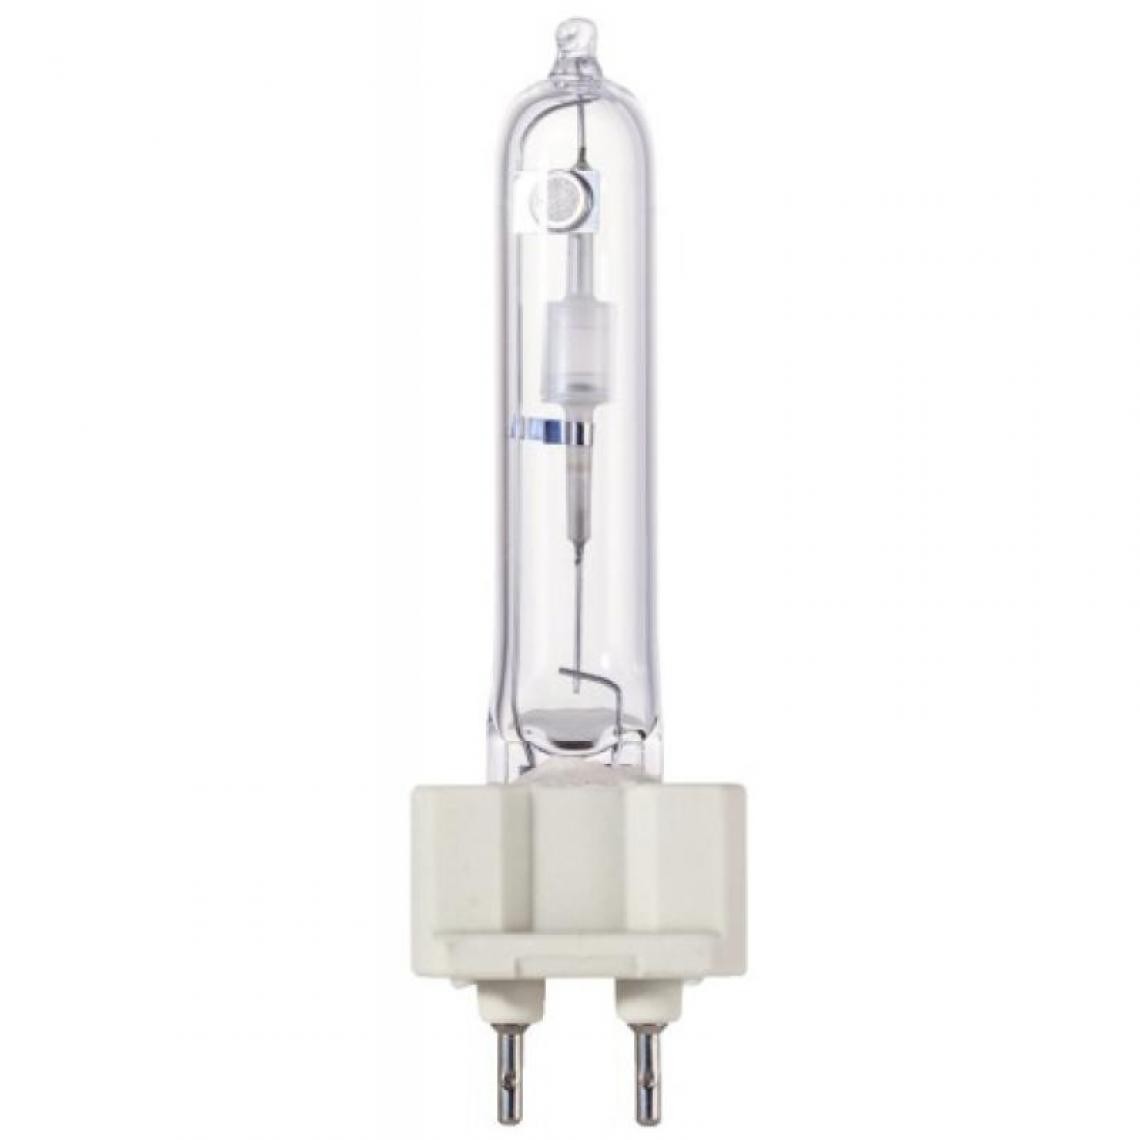 Ge Lighting - Lampe iodure métallique bruleur céramique G12 70W 4200k - Ampoules LED